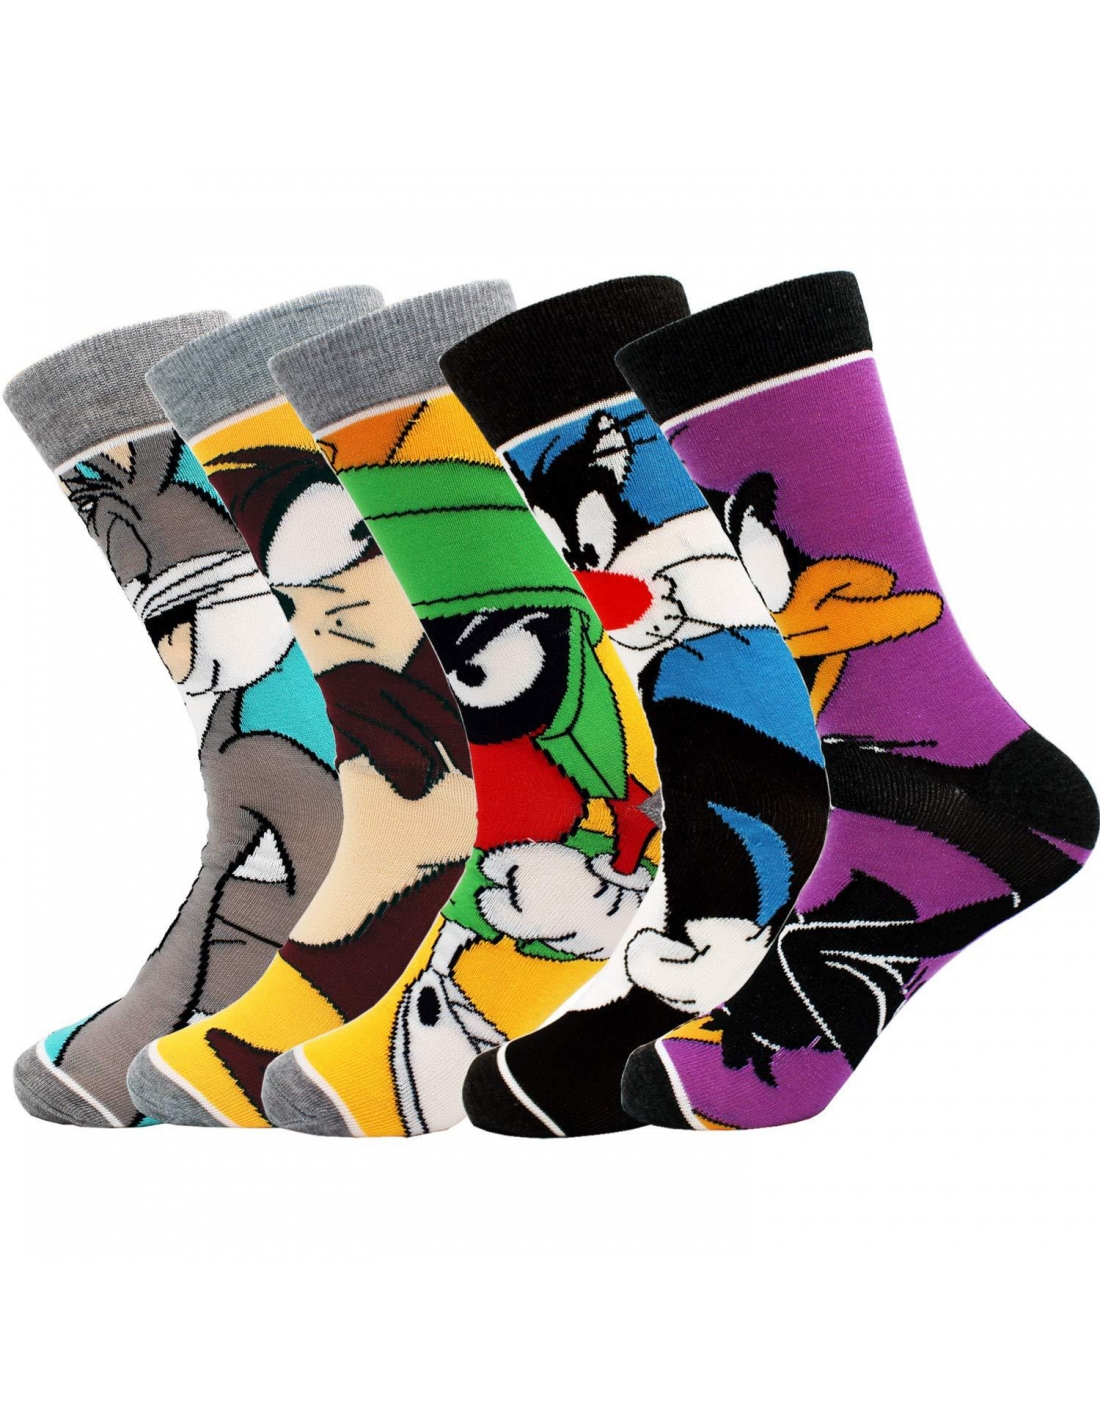 Gremlins - Calcetines para hombre, diseño de dibujos animados y personajes  a rayas, paquete de 2 calcetines para adultos, Varios colores